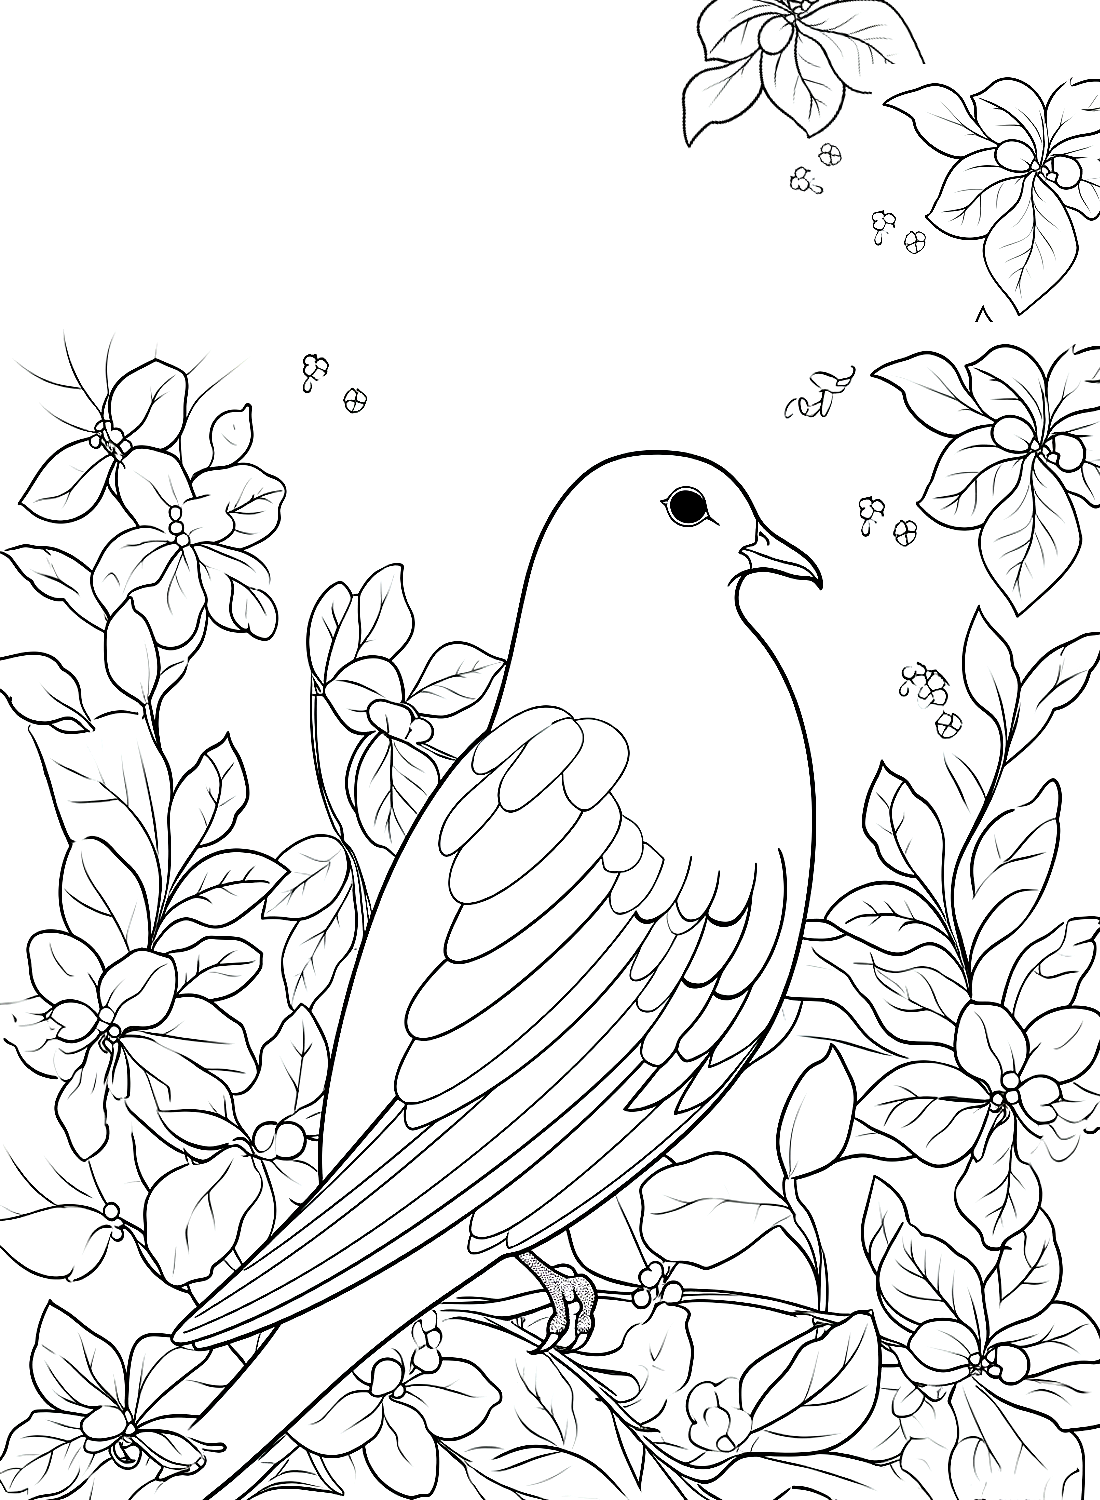 Eine Taube und Blumen von Doves